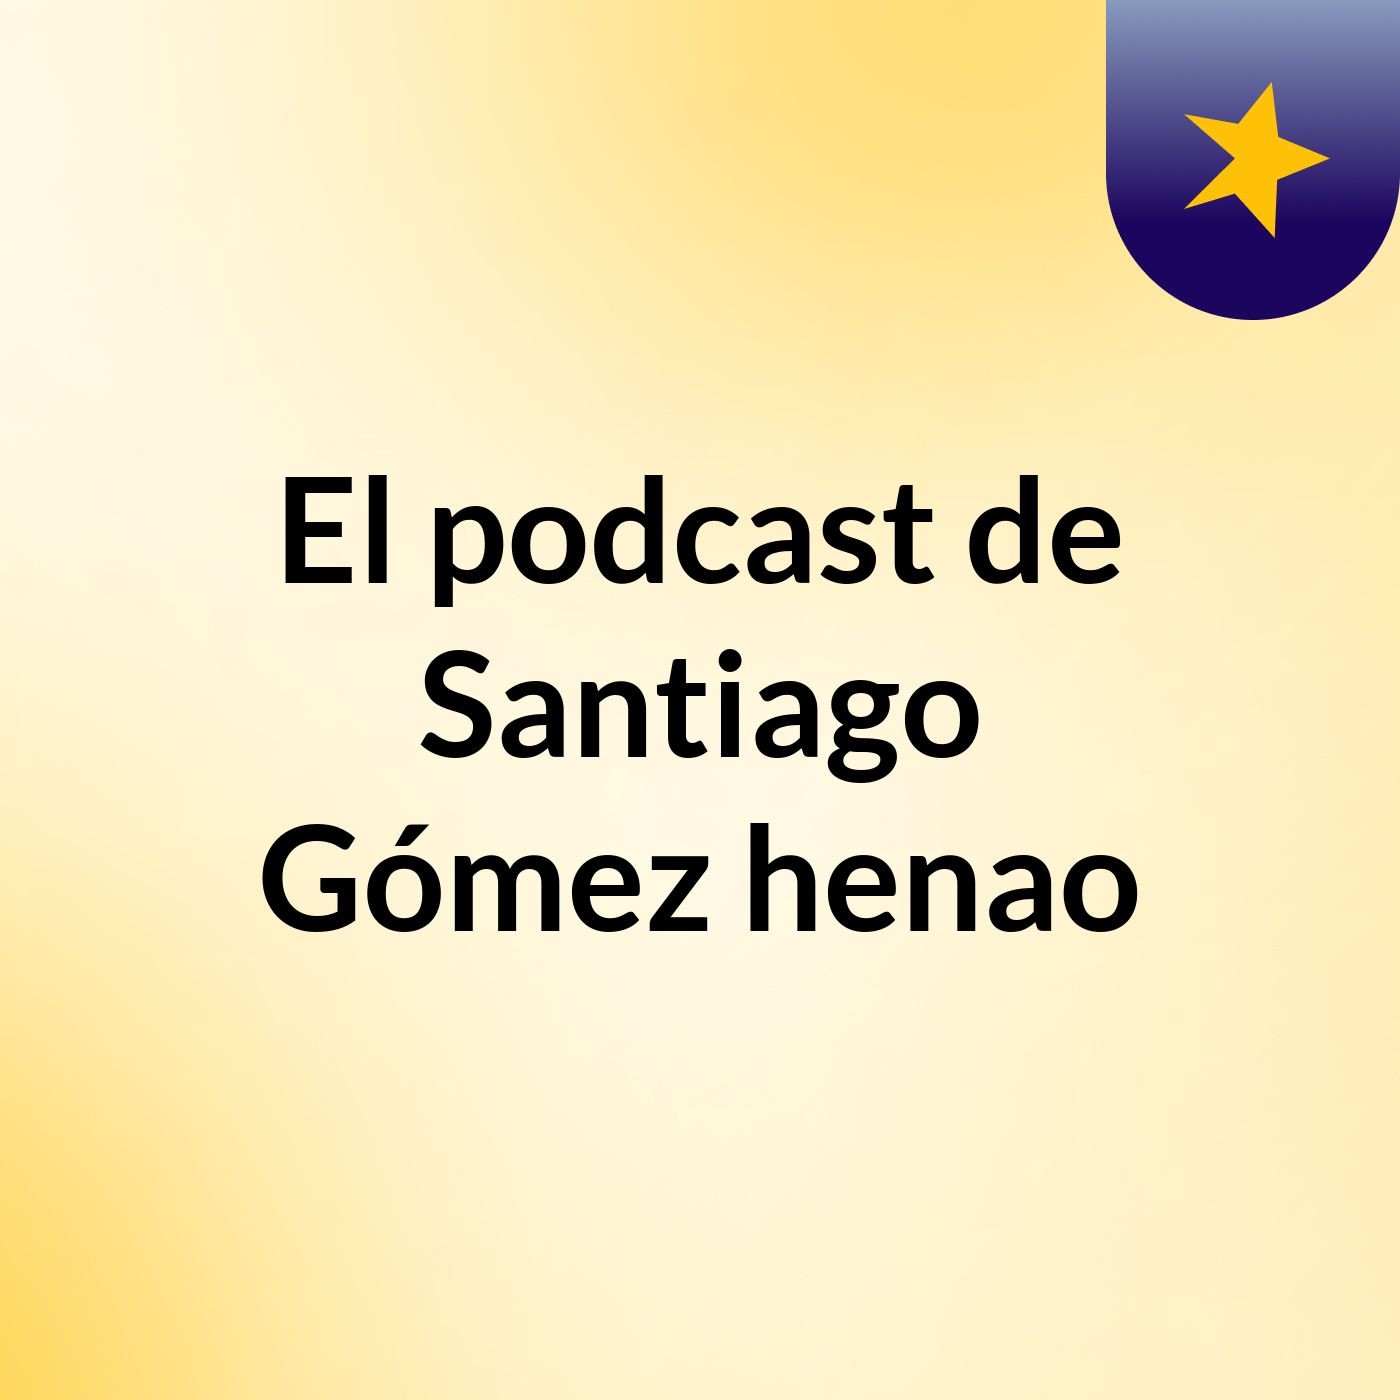 El podcast de Santiago Gómez henao